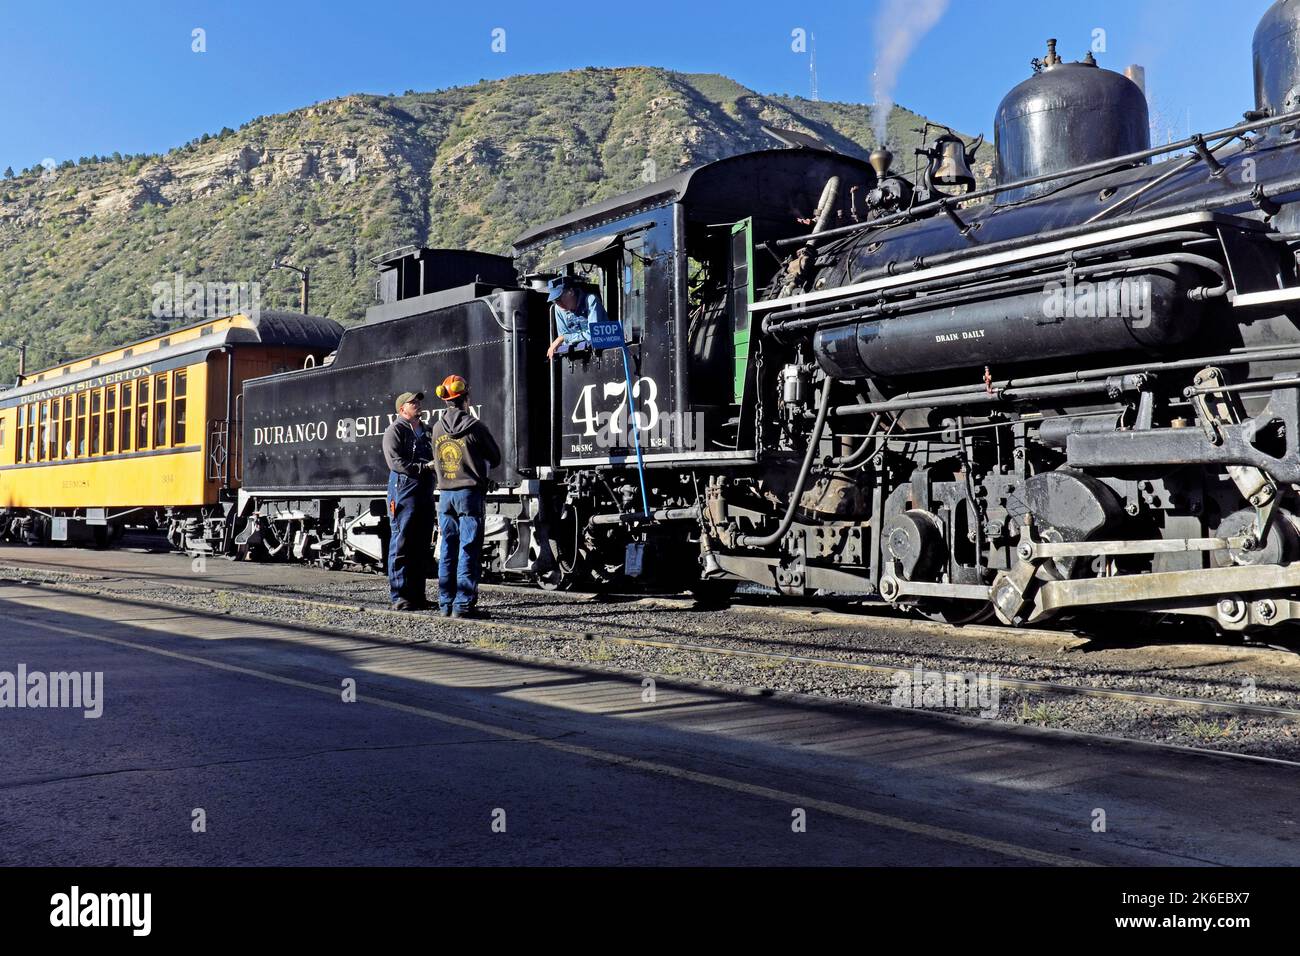 Le chef d'orchestre historique de la locomotive K-28 473 Durango & Silverton discute avec les travailleurs avant leur départ de Durango, Colorado, États-Unis. Banque D'Images